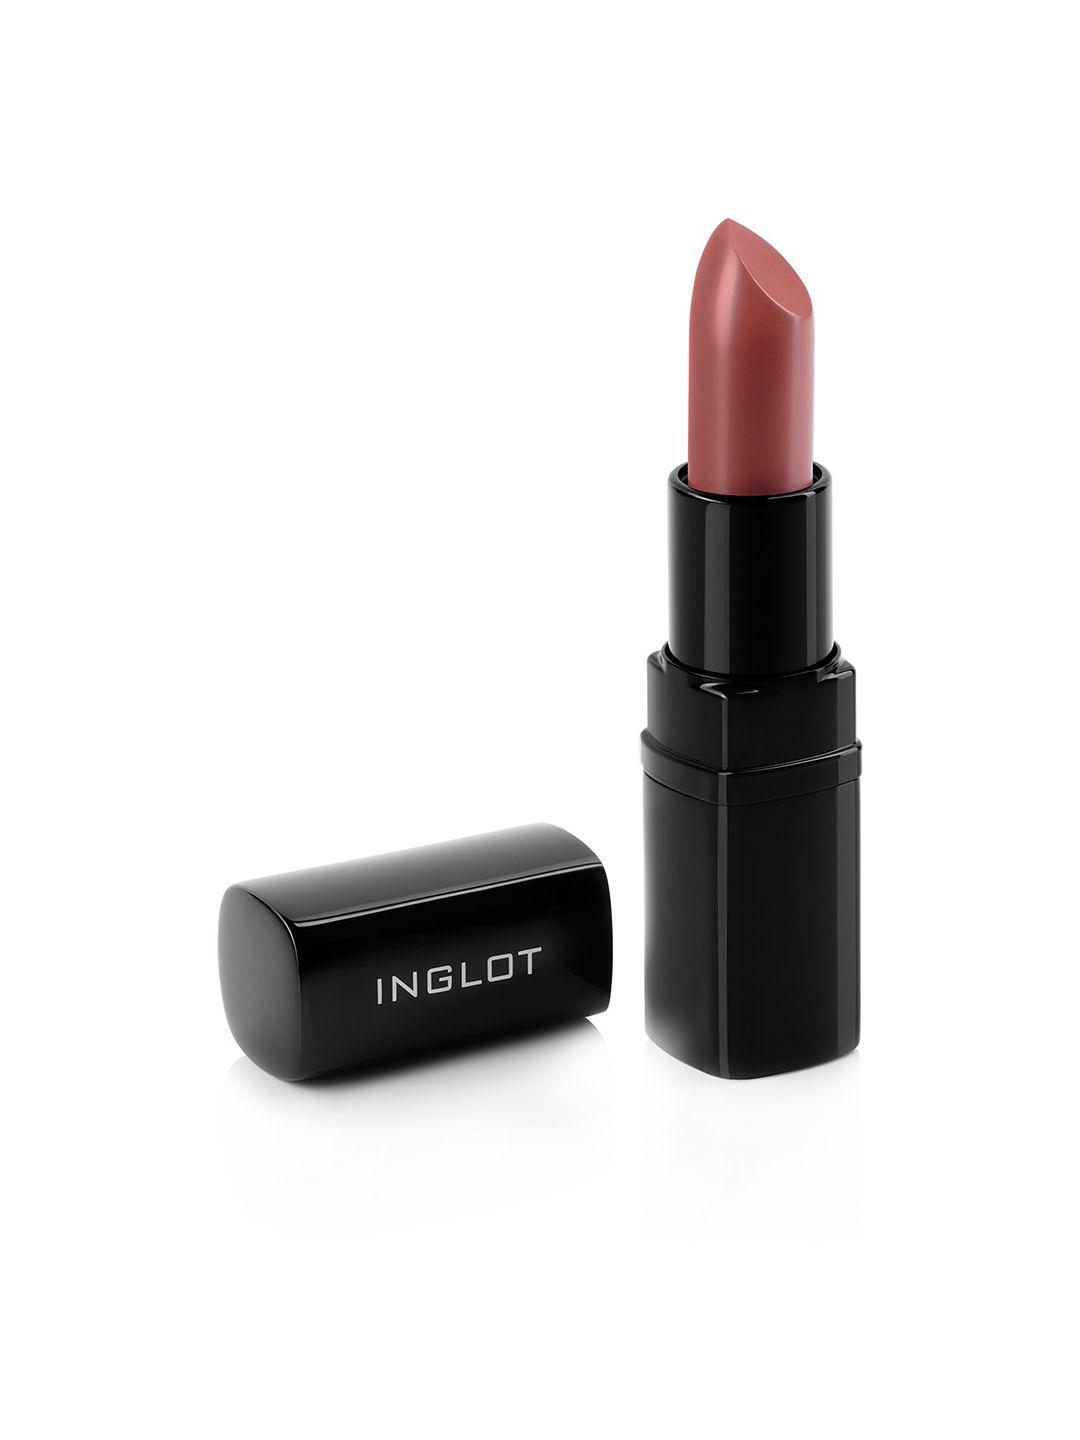 inglot long wearing matte lipstick 4.5 g - shade 425